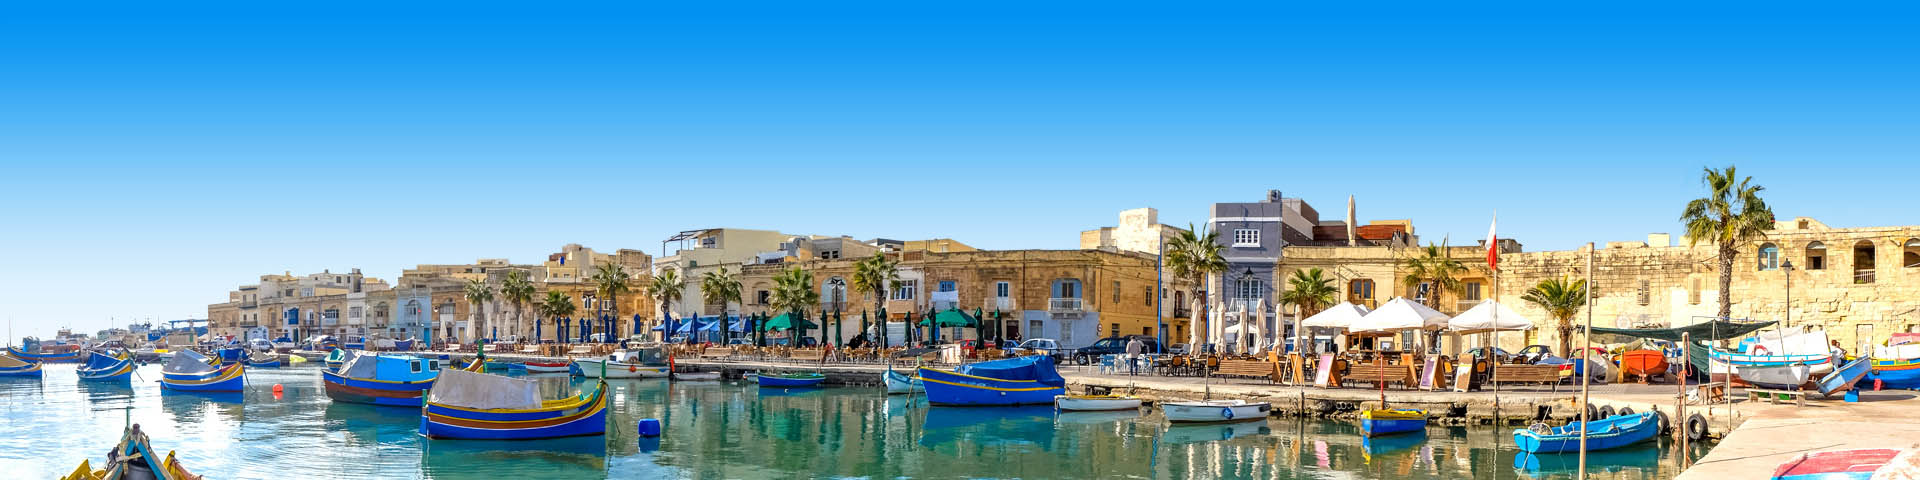 Bootjes in de gezellige haven van Malta met boulevard